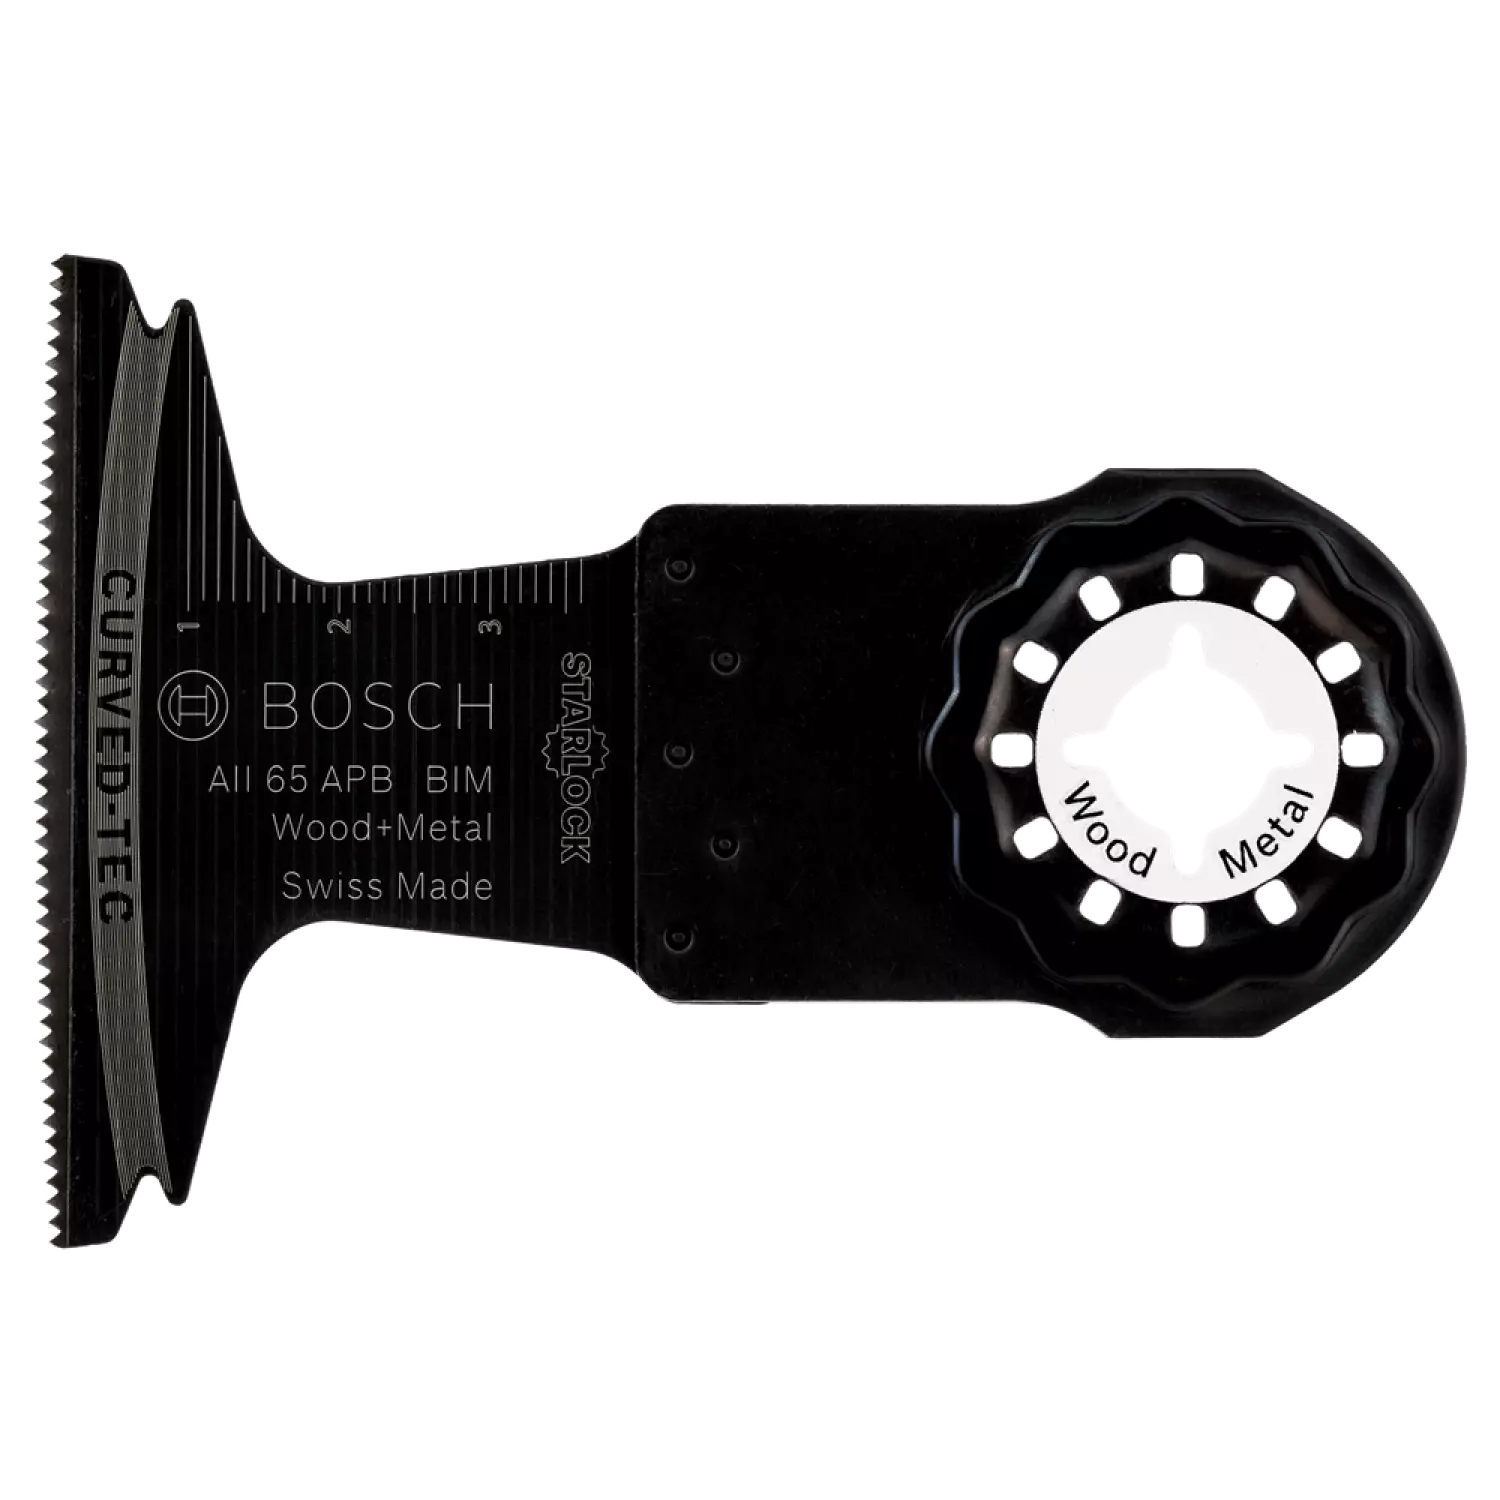 Bosch 2608661907 - Starlock AII 65 APB BIM, Wood+Metal, Curved-Tec 65 x 40 5x-image